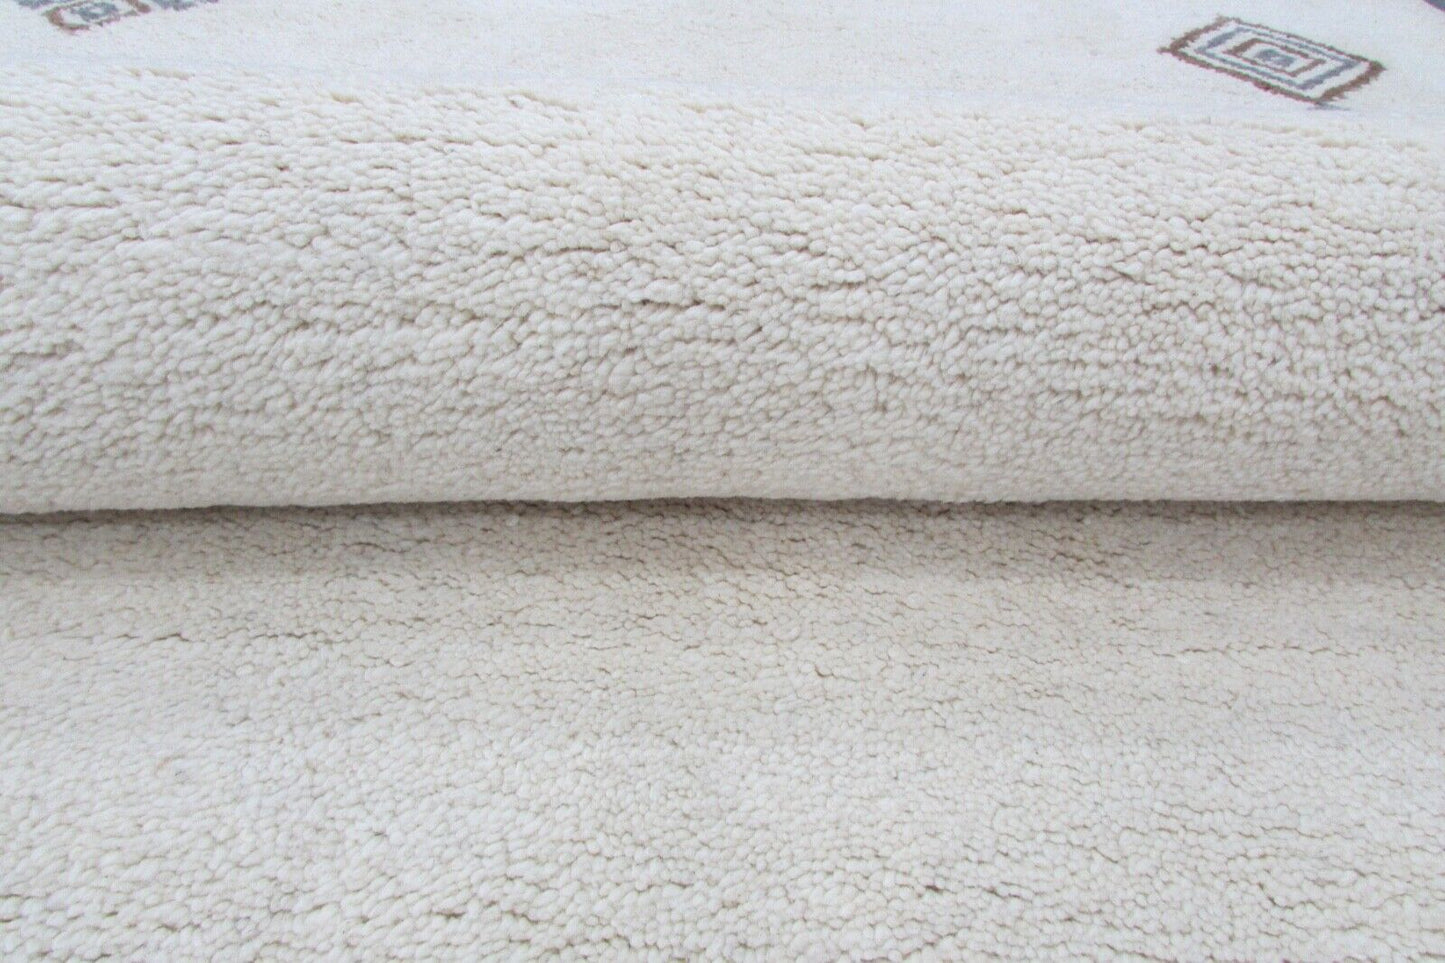 Teppich 100% Wolle 160X230 cm Modern Design Handgetuftet Beige Grau T844